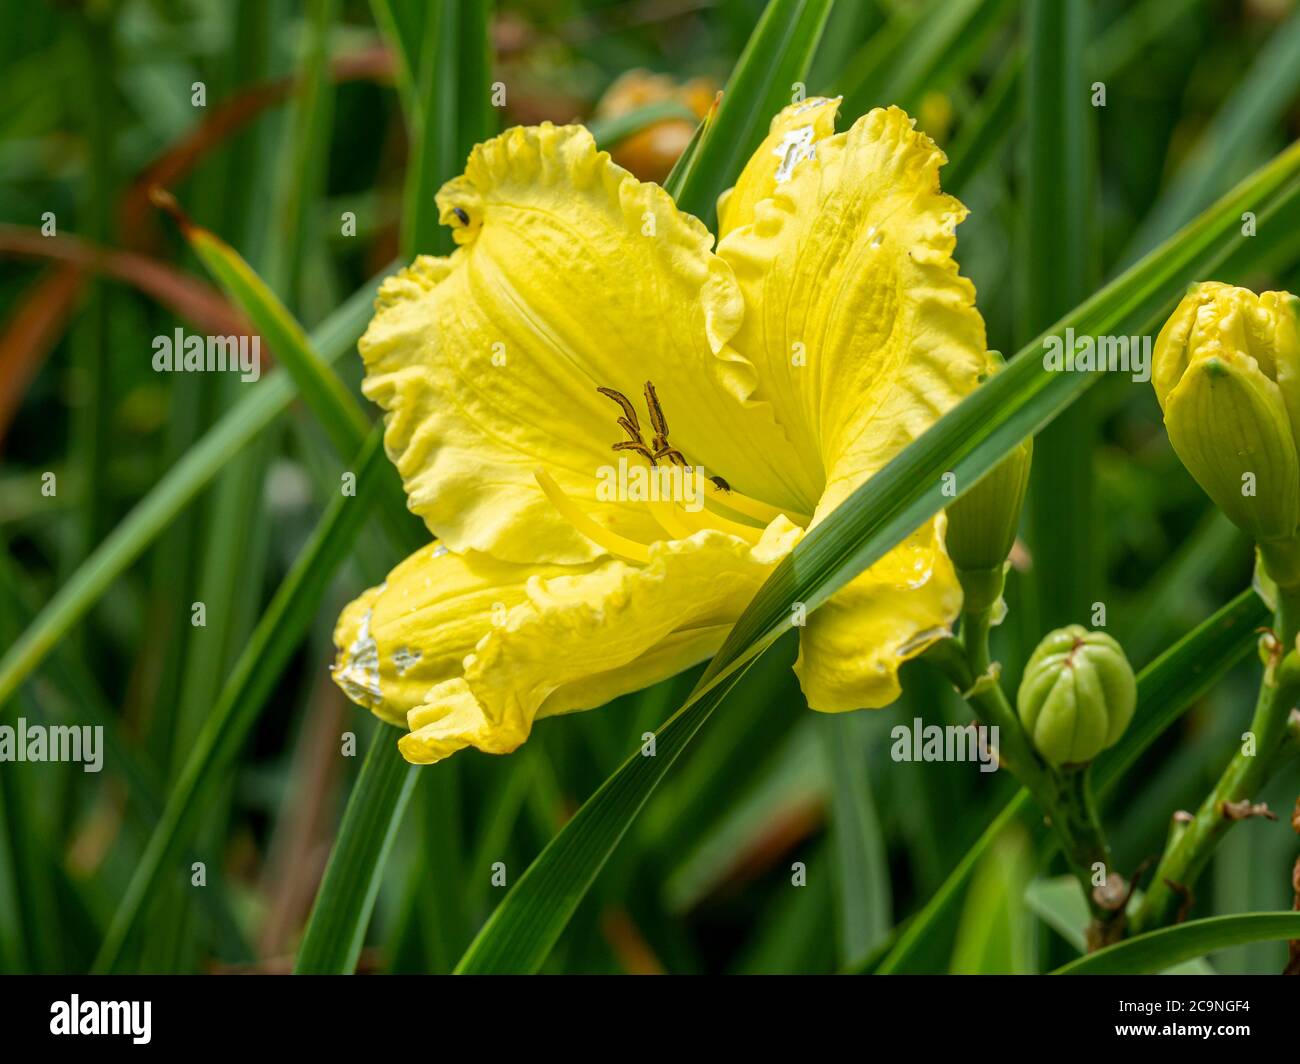 Gros plan d'une fleur jaune pâle Hemerocallis dayly, variété Missouri Beauty, dans un jardin Banque D'Images